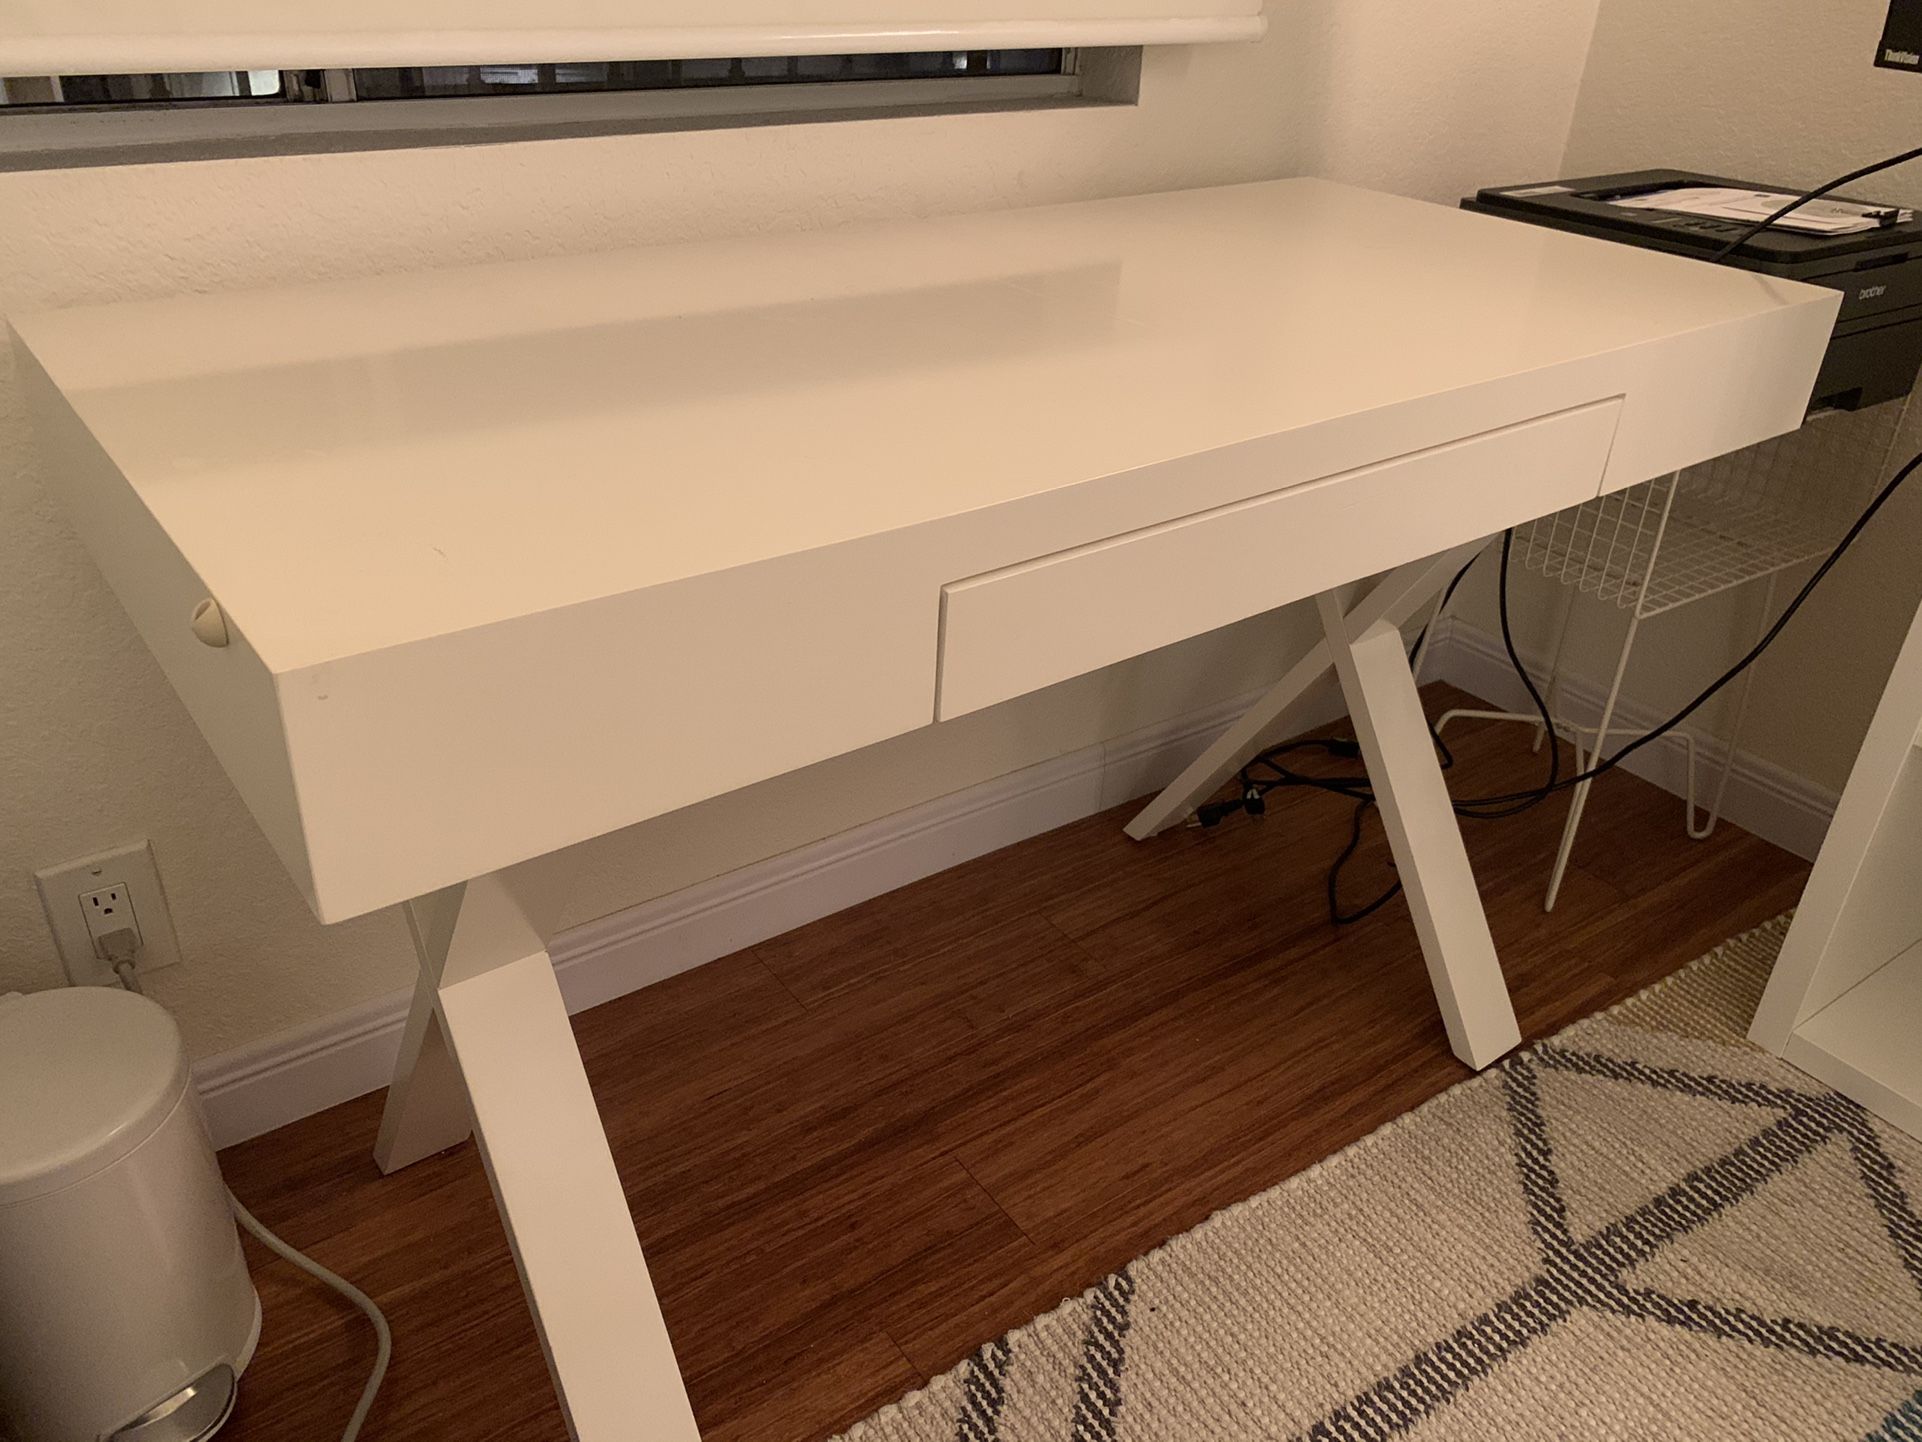 Small White Desk